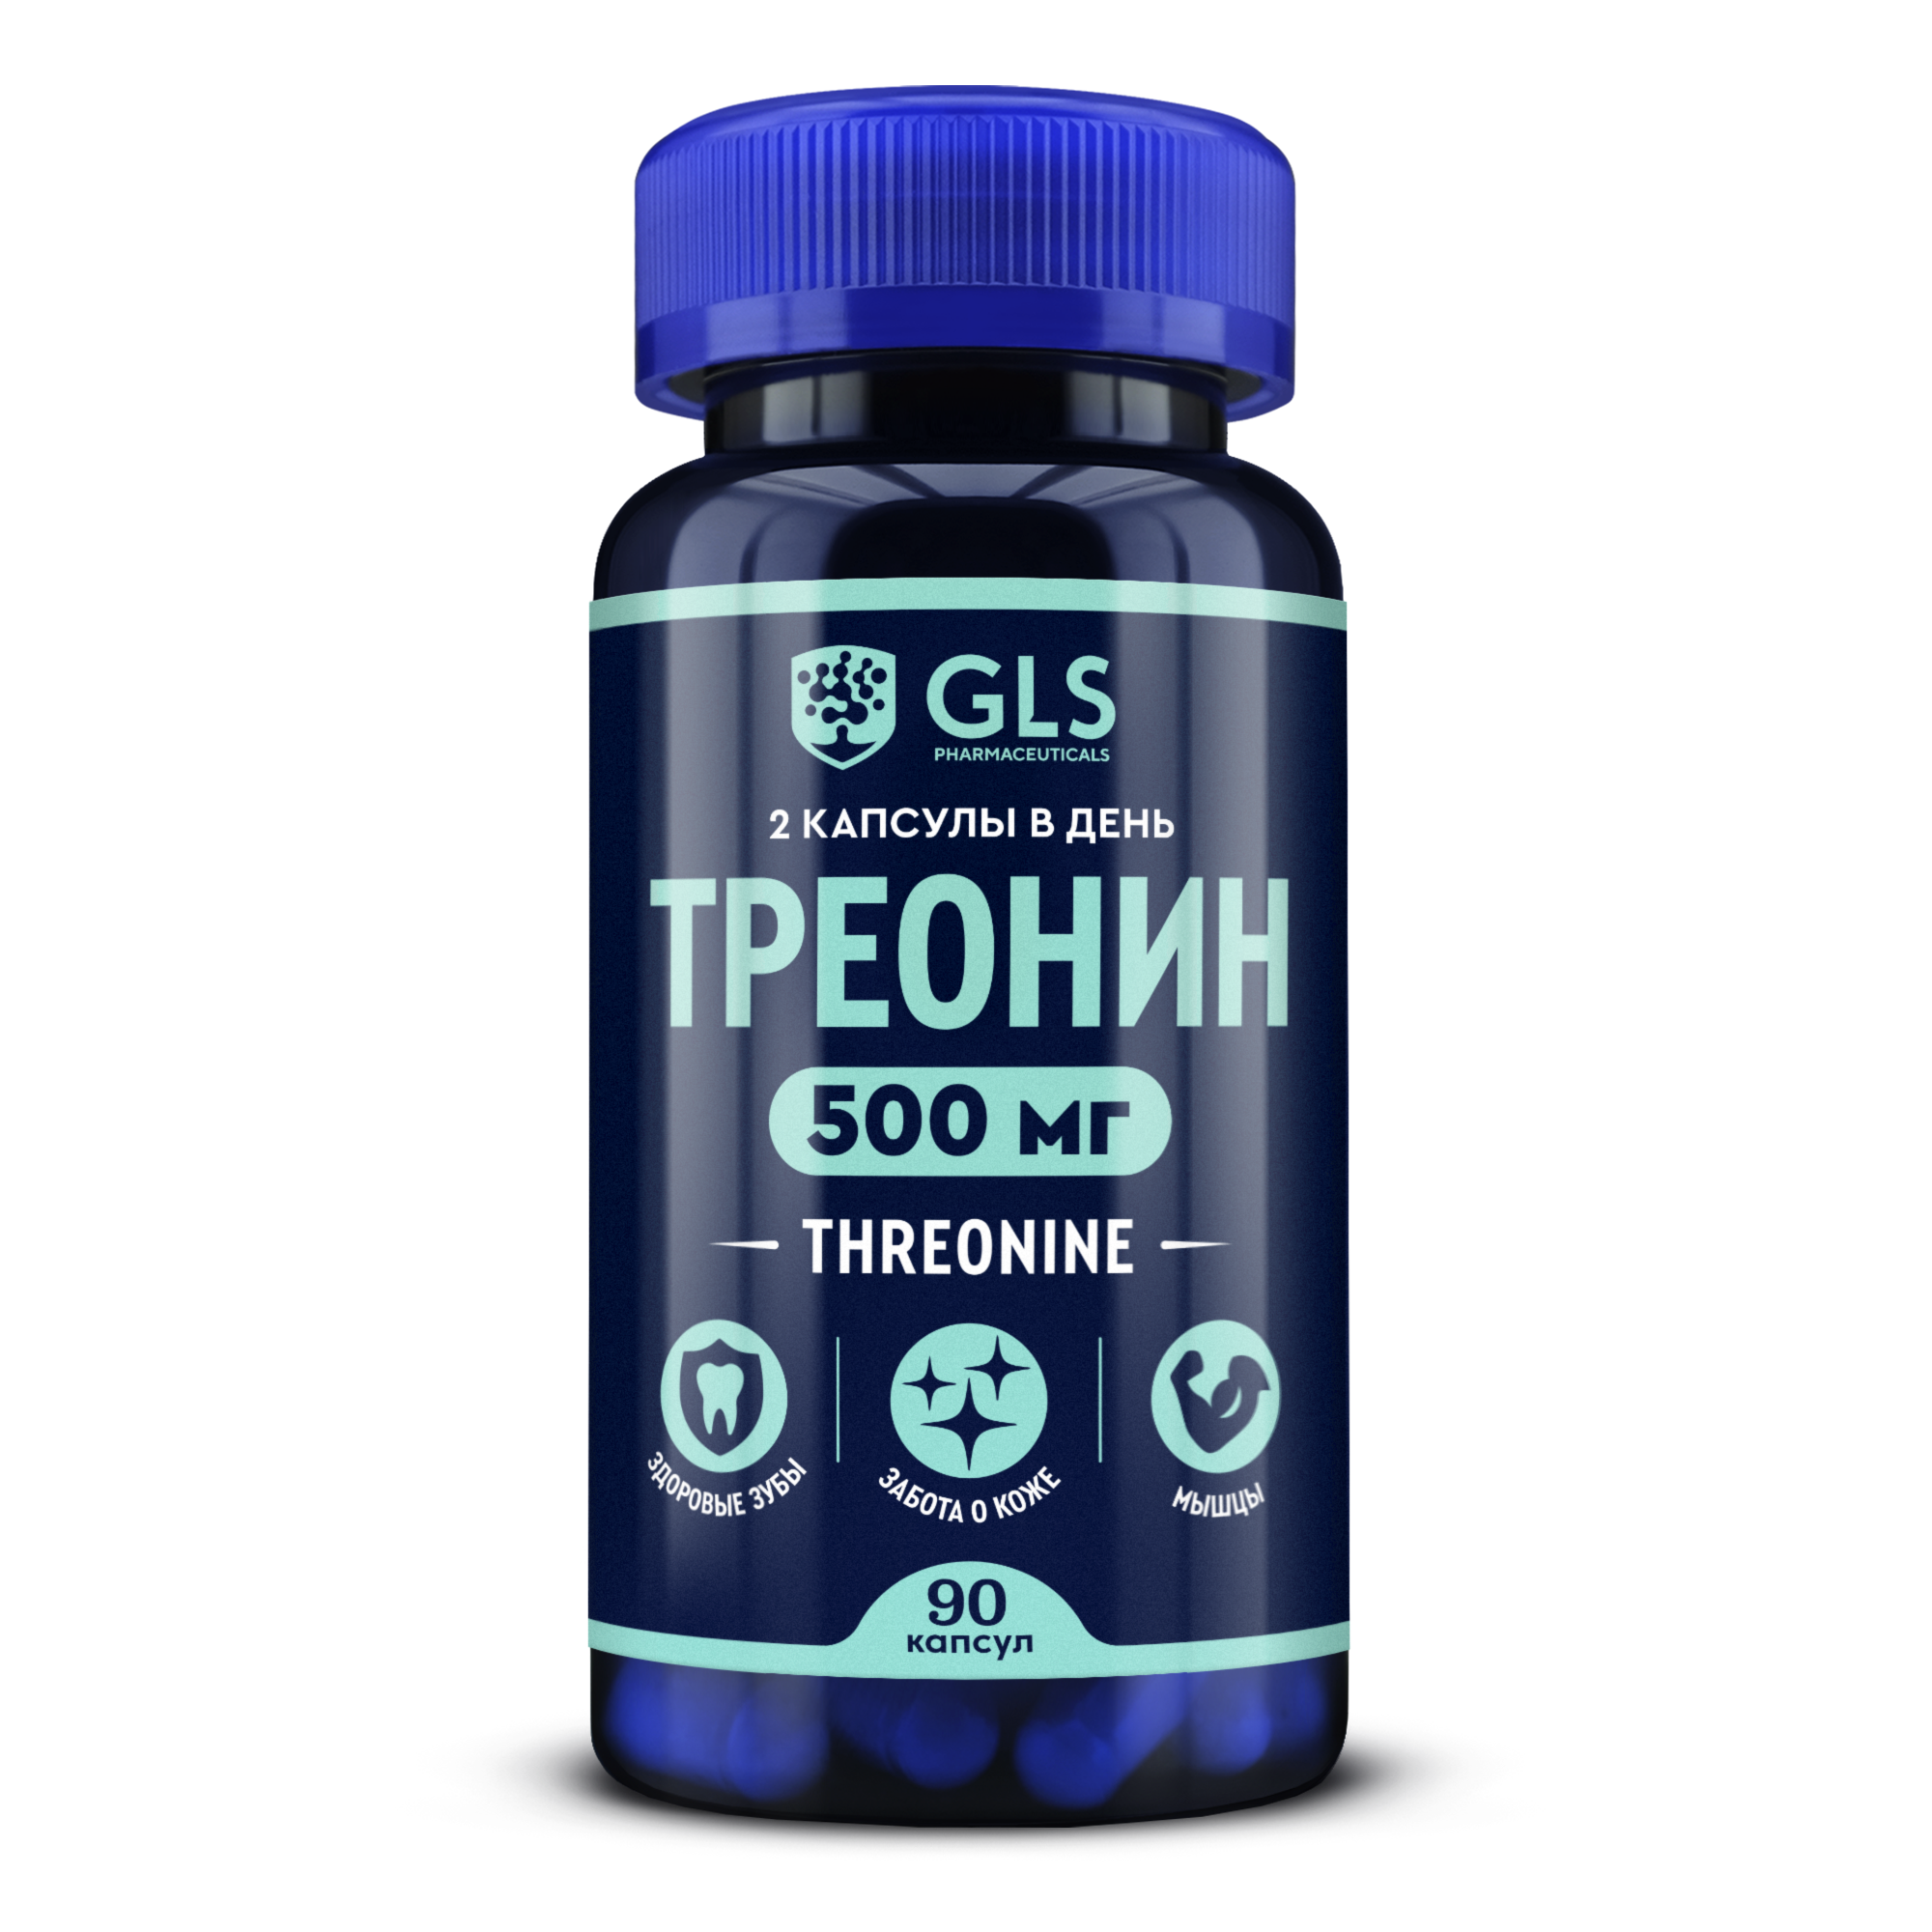 Аминокислота Треонин (K-threonine) 500 GLS pharmaceuticals, 90 капсул